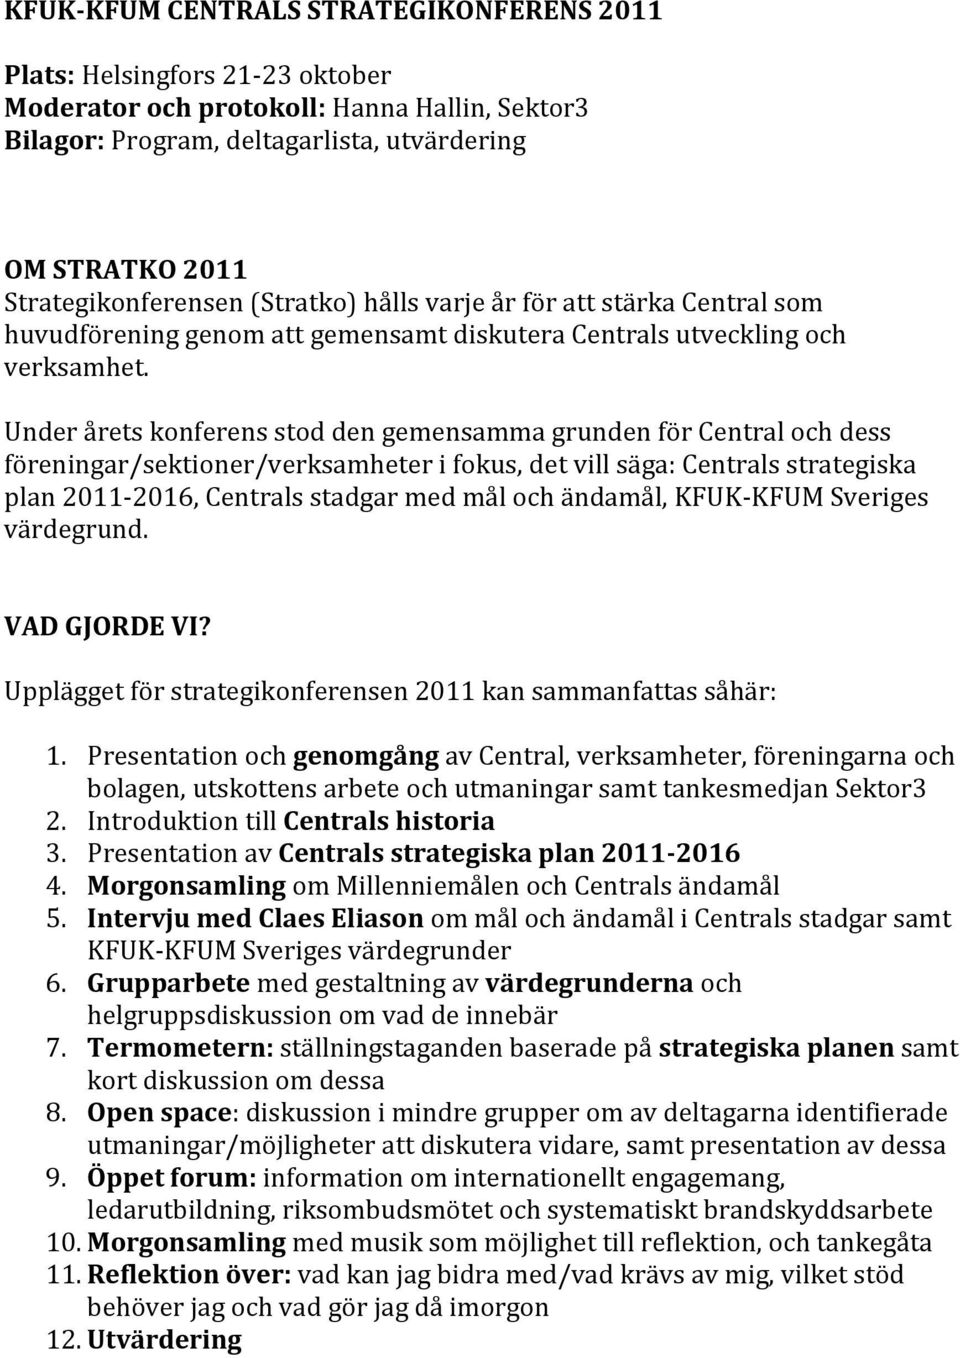 Under årets konferens stod den gemensamma grunden för Central och dess föreningar/sektioner/verksamheter i fokus, det vill säga: Centrals strategiska plan 2011-2016, Centrals stadgar med mål och